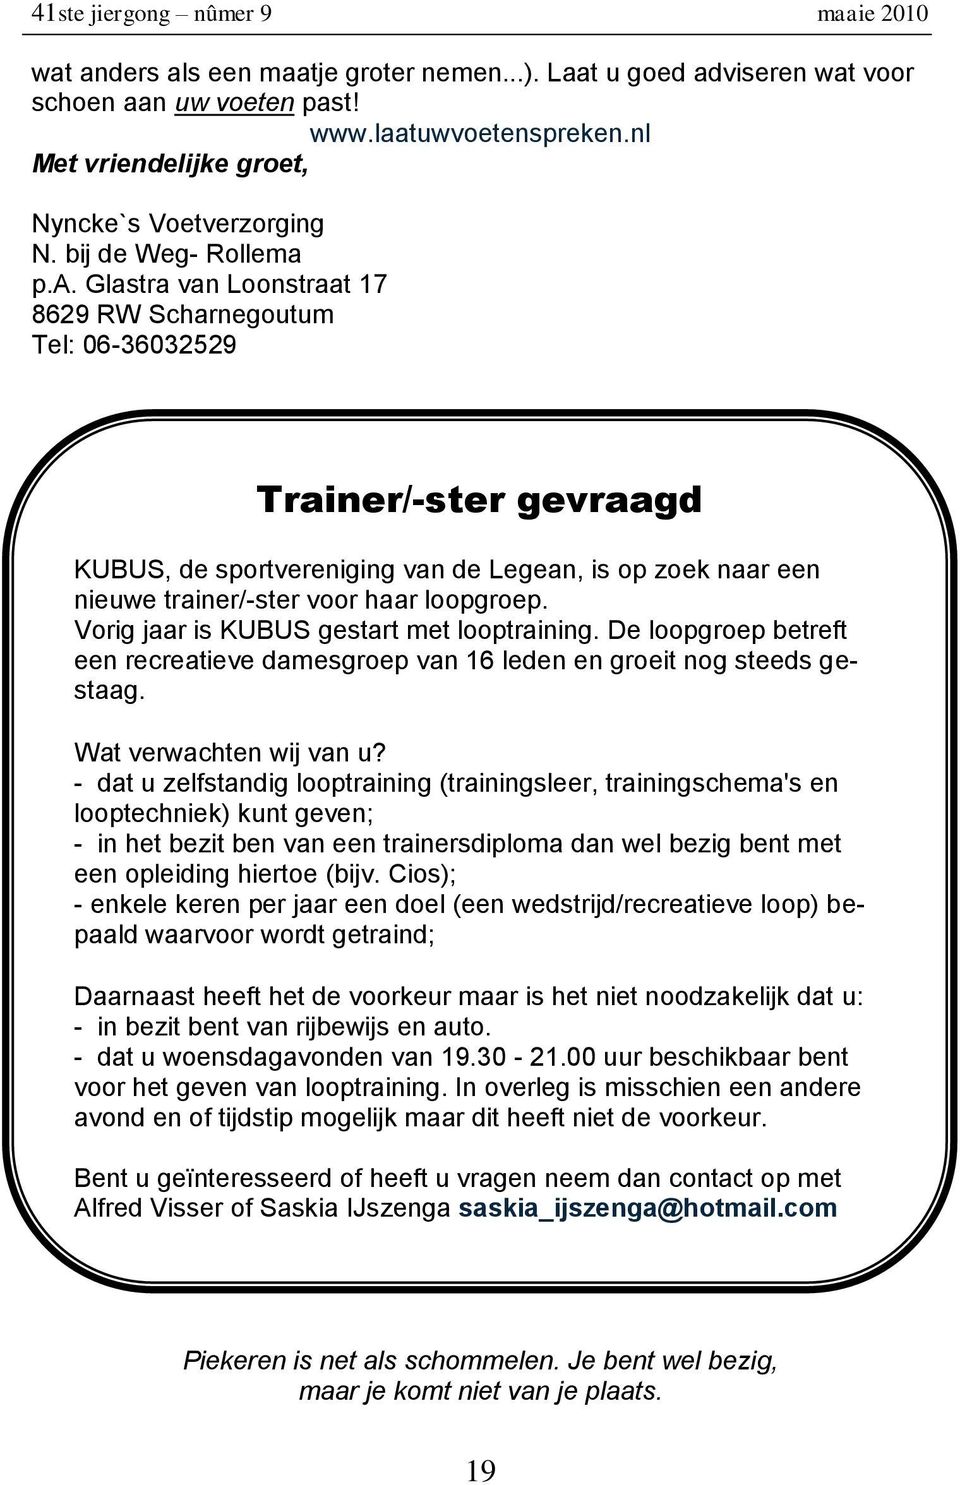 p.a. Glastra van Loonstraat 17 8629 RW Scharnegoutum Tel: 06-36032529 Trainer/-ster gevraagd KUBUS, de sportvereniging van de Legean, is op zoek naar een nieuwe trainer/-ster voor haar loopgroep.